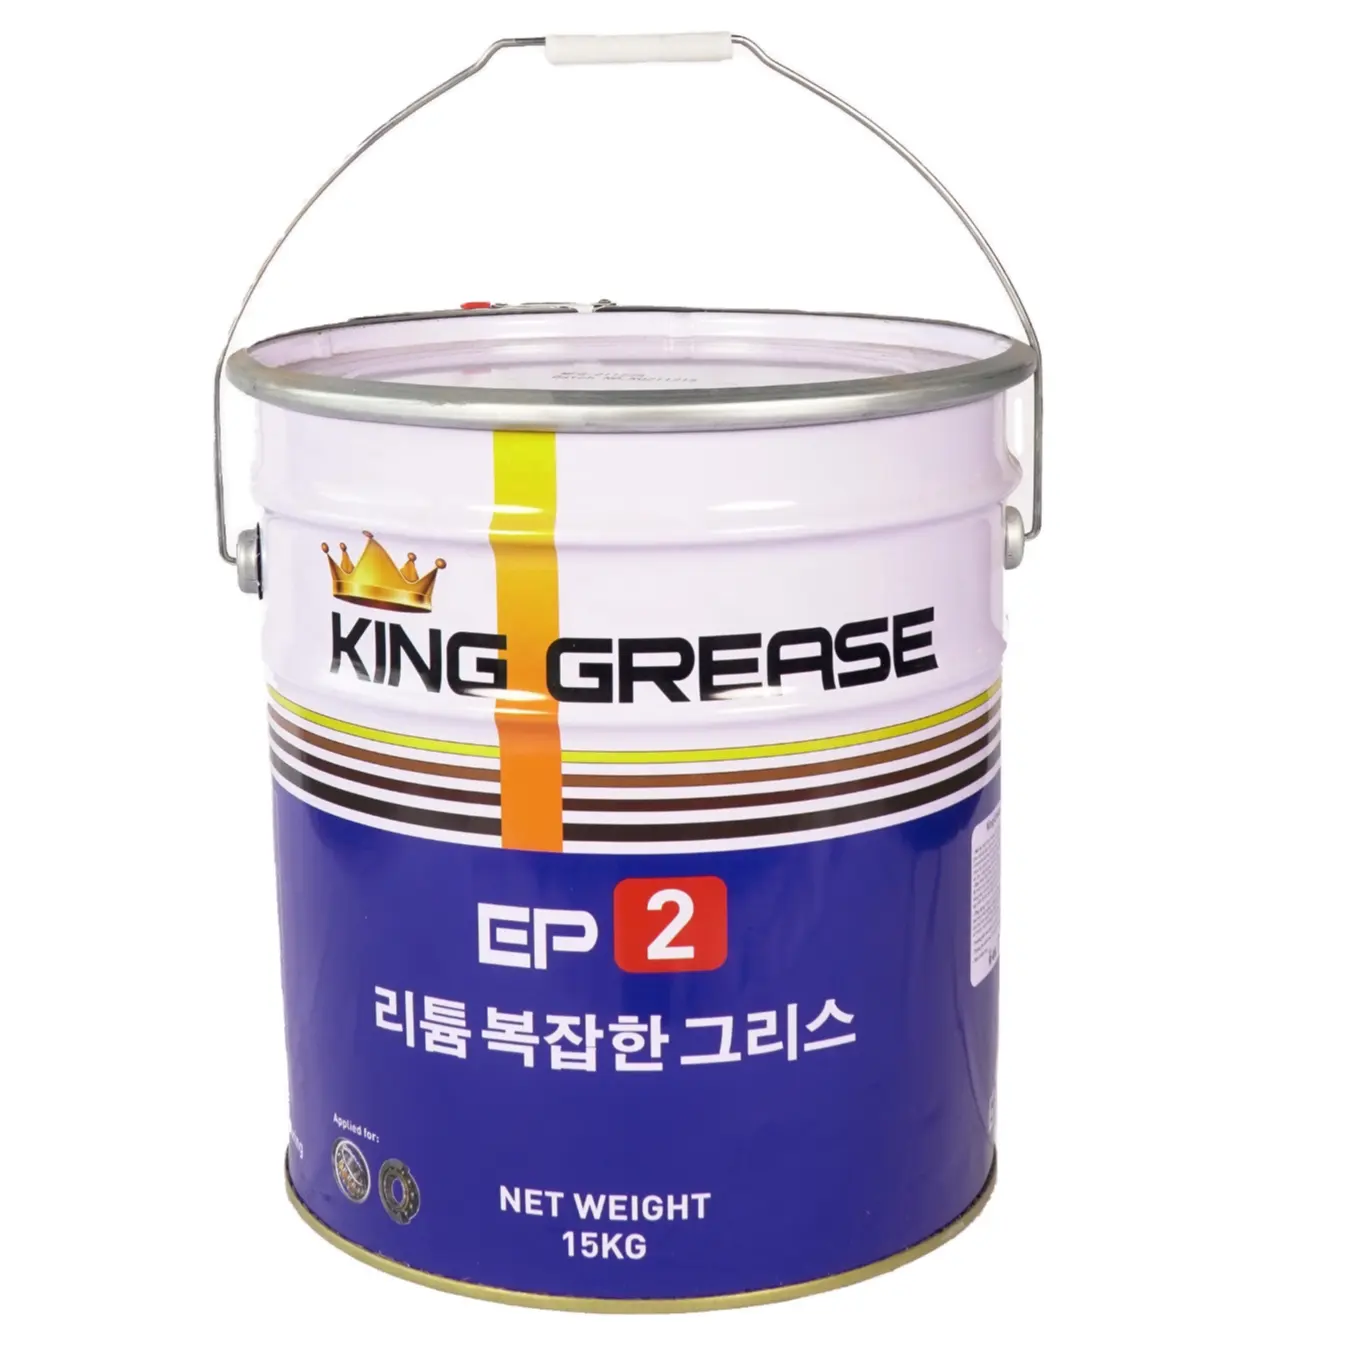 K-GREASE LITHIUM EP2 fabriqué au Vietnam, résiste à l'oxydation et à l'application en gros pour les engrenages lourds. Graisse lubrifiante